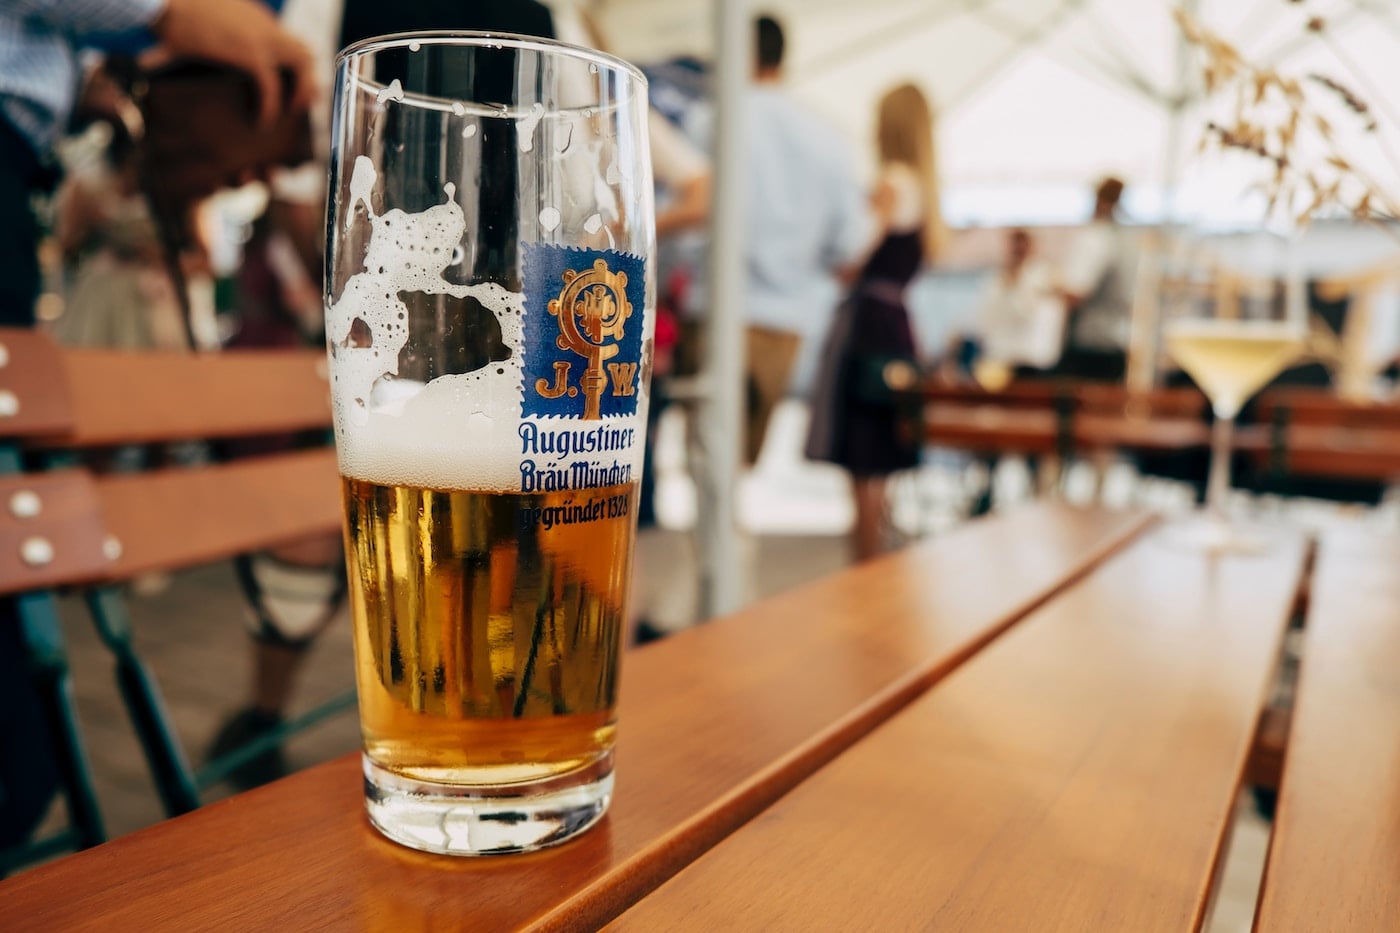 Bier als souvenir uit Duitsland